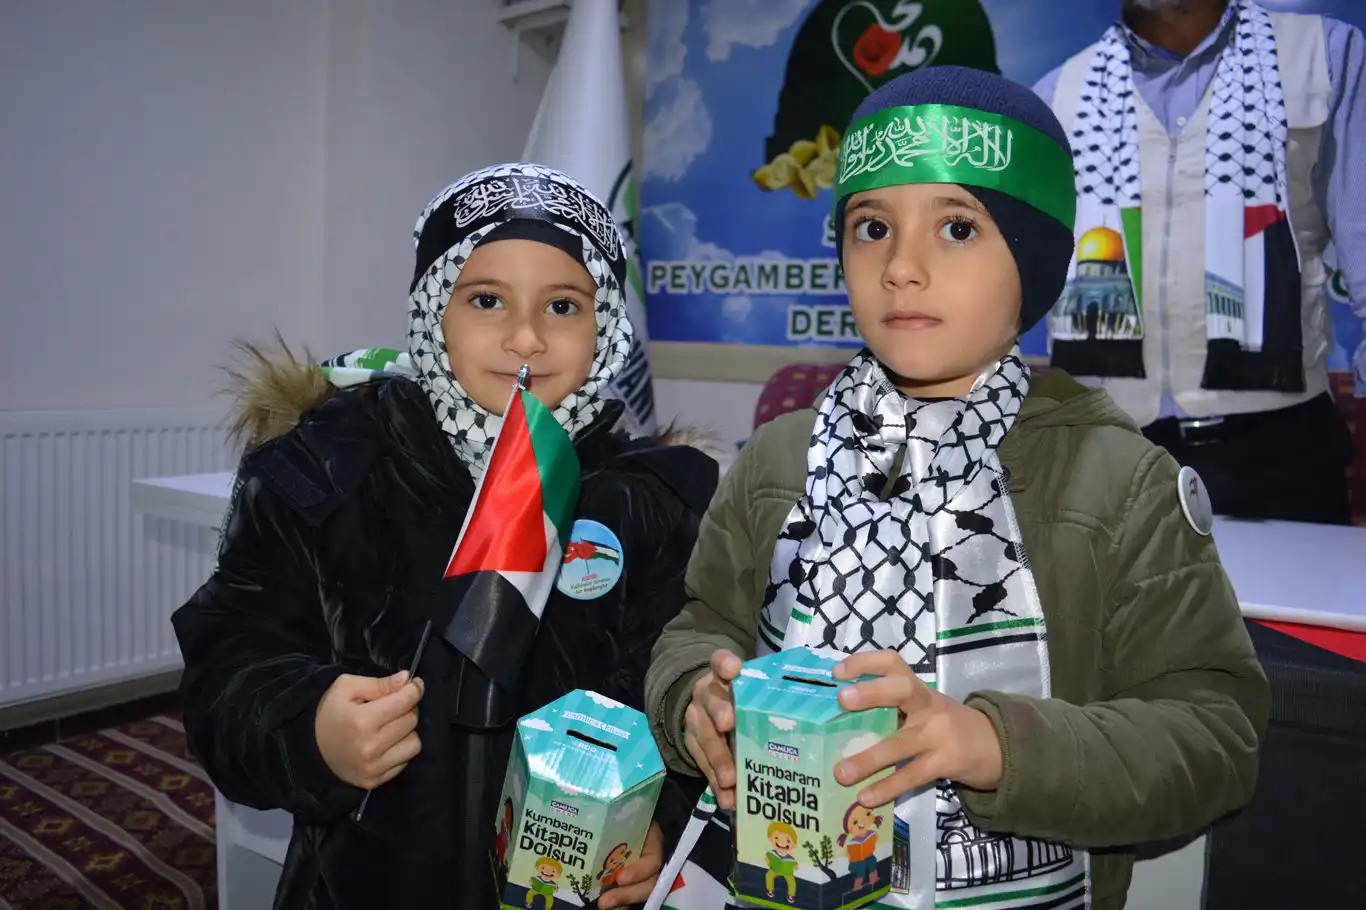 Siirt'te minik yürekler harçlıklarını, anne baba ise altınlarını Gazze'ye bağışladı